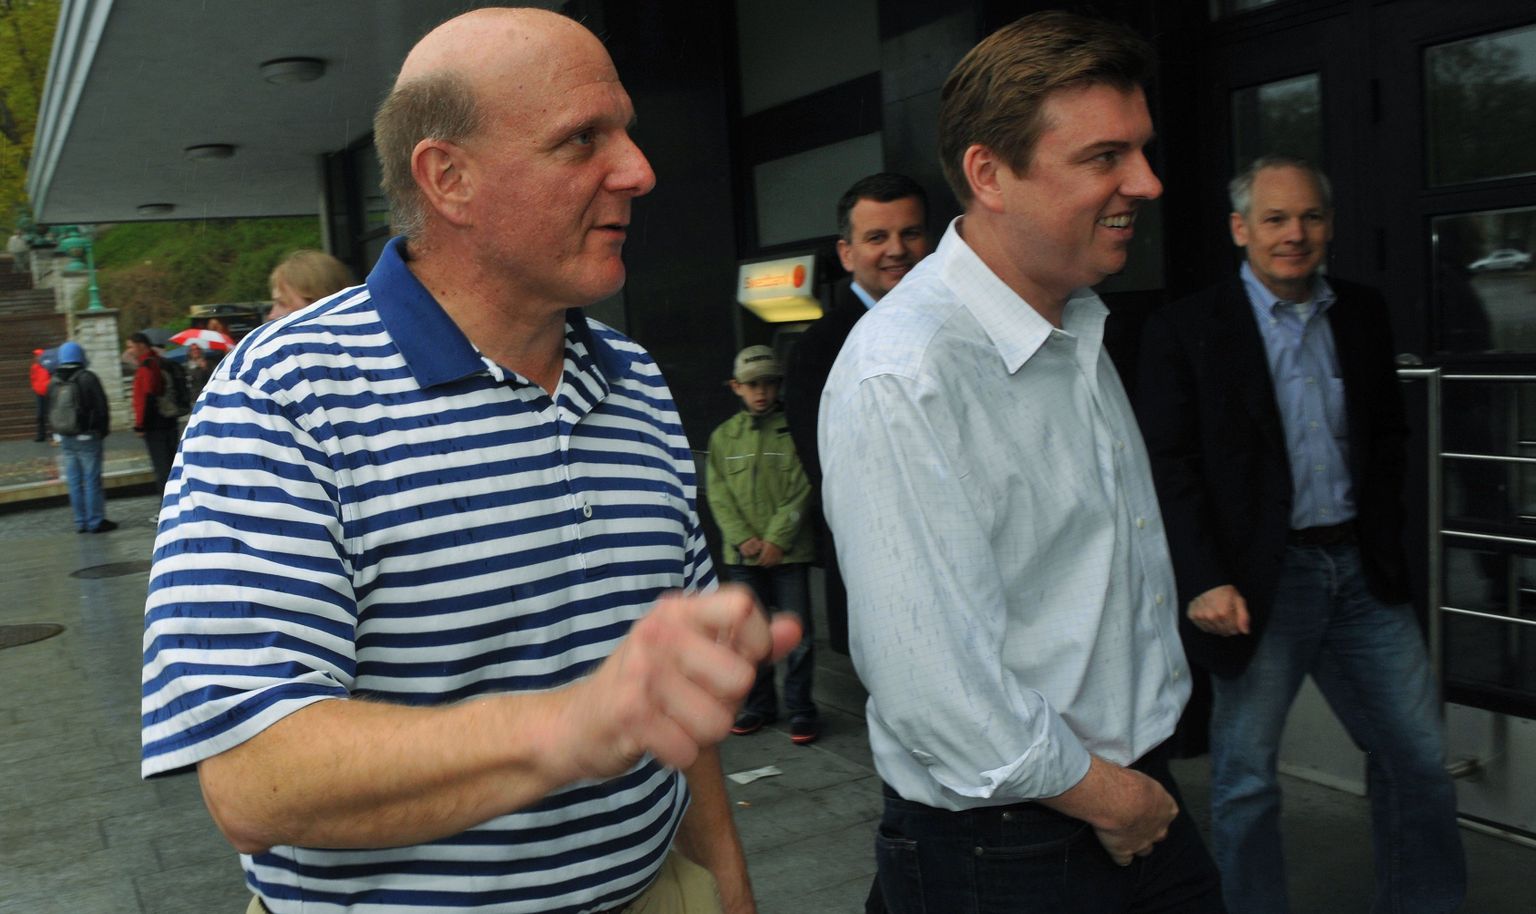 Eestit külastav Microsofti juht Steve Ballmer (vasakul)ja Skype'i juht Tony Bates Tallinnas Wabaduse kohviku ees.